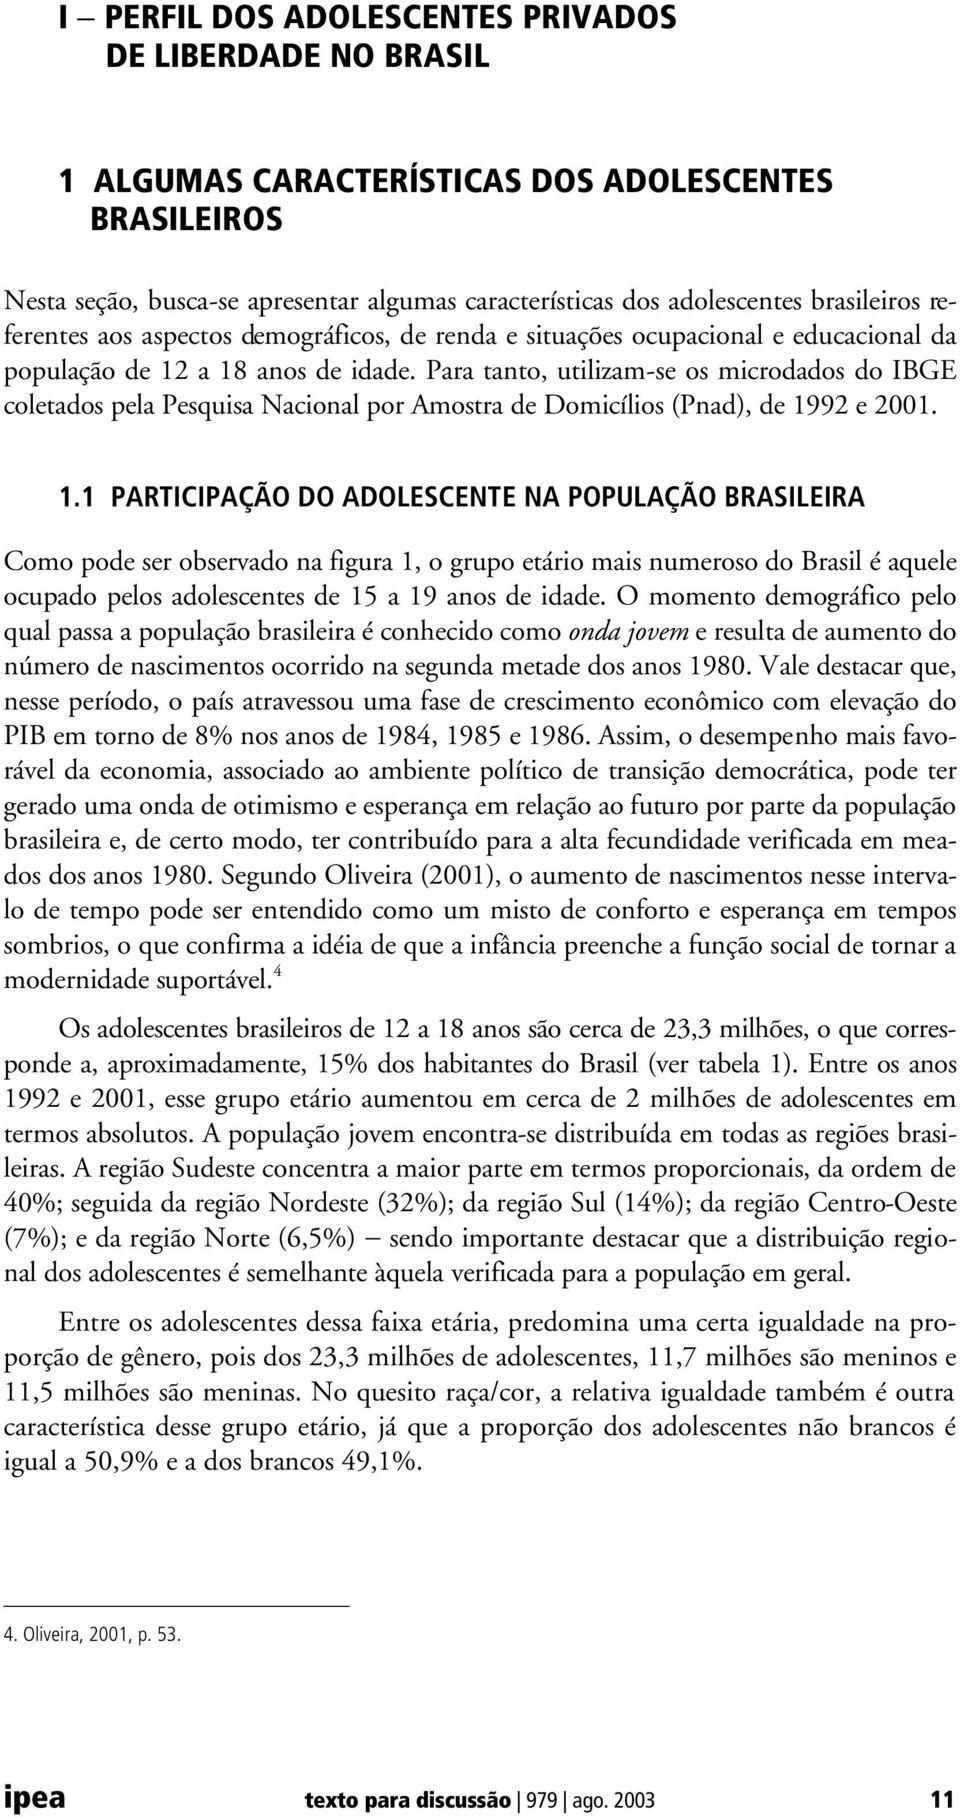 Para tanto, utilizam-se os microdados do IBGE coletados pela Pesquisa Nacional por Amostra de Domicílios (Pnad), de 19